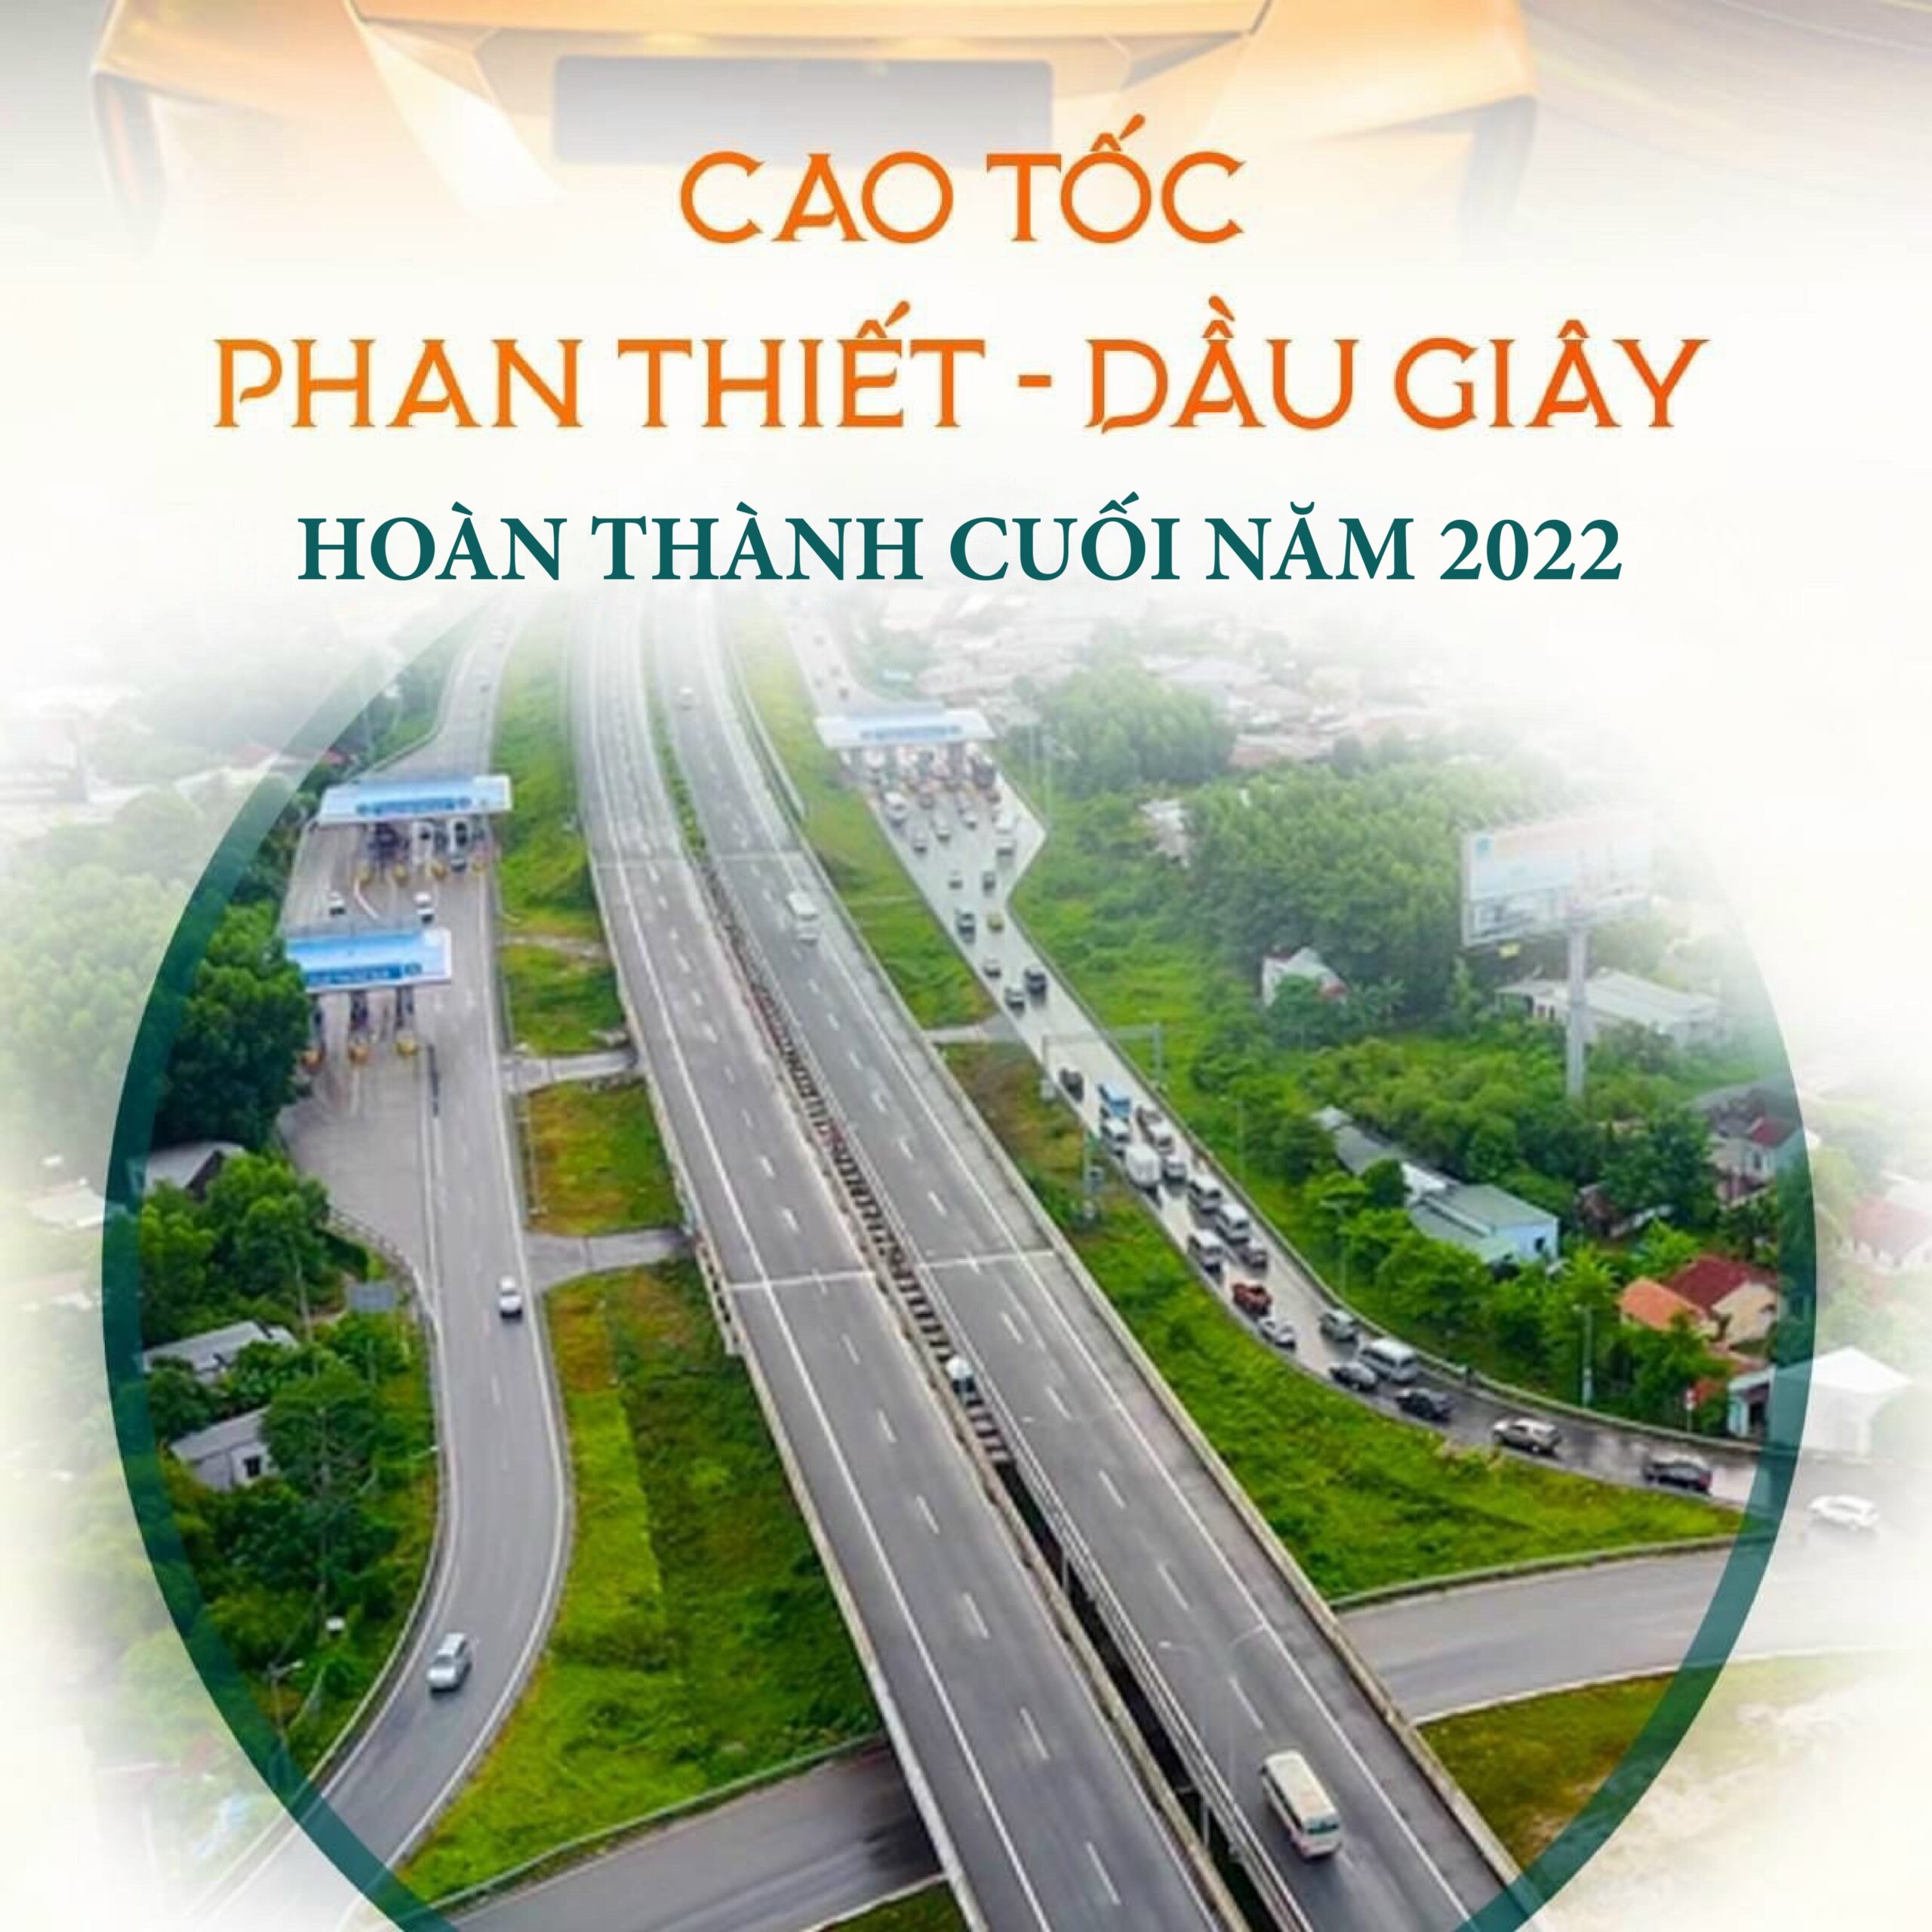 Cao Toc Dau Giay Phan Thiet 2022